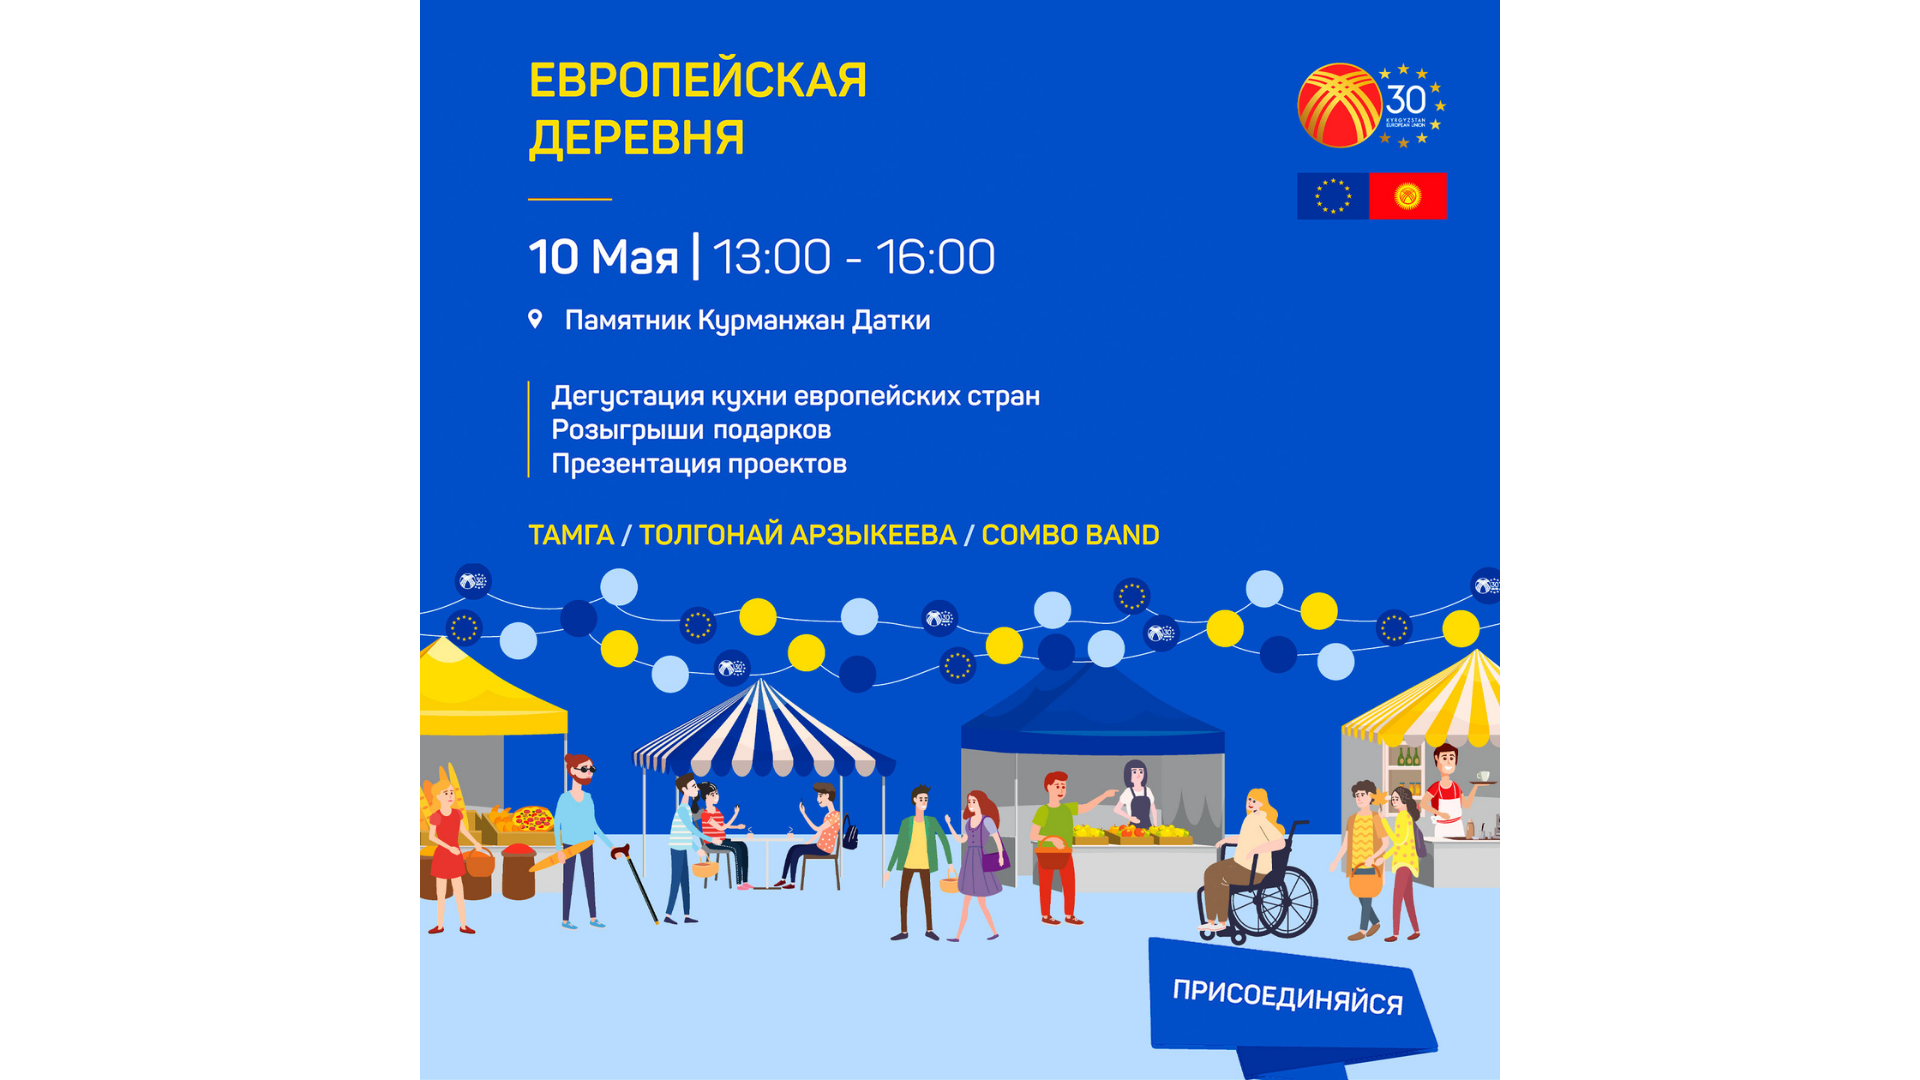 Enactus Кыргызстан принимает участие в “Европейской деревне”